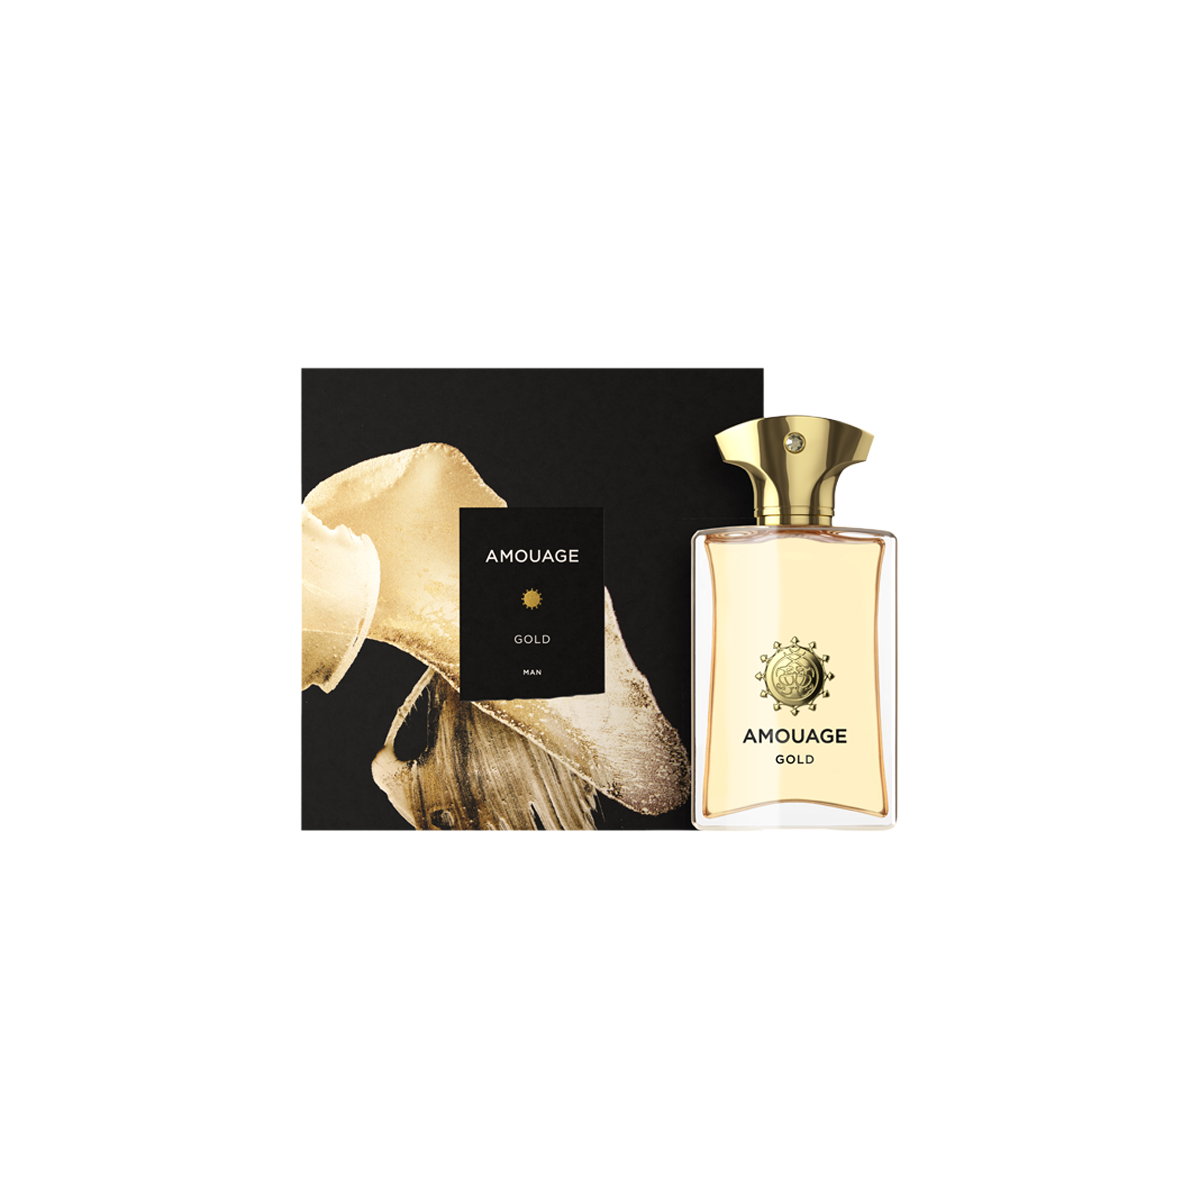 Amouage - Gold Man Eau De Parfum